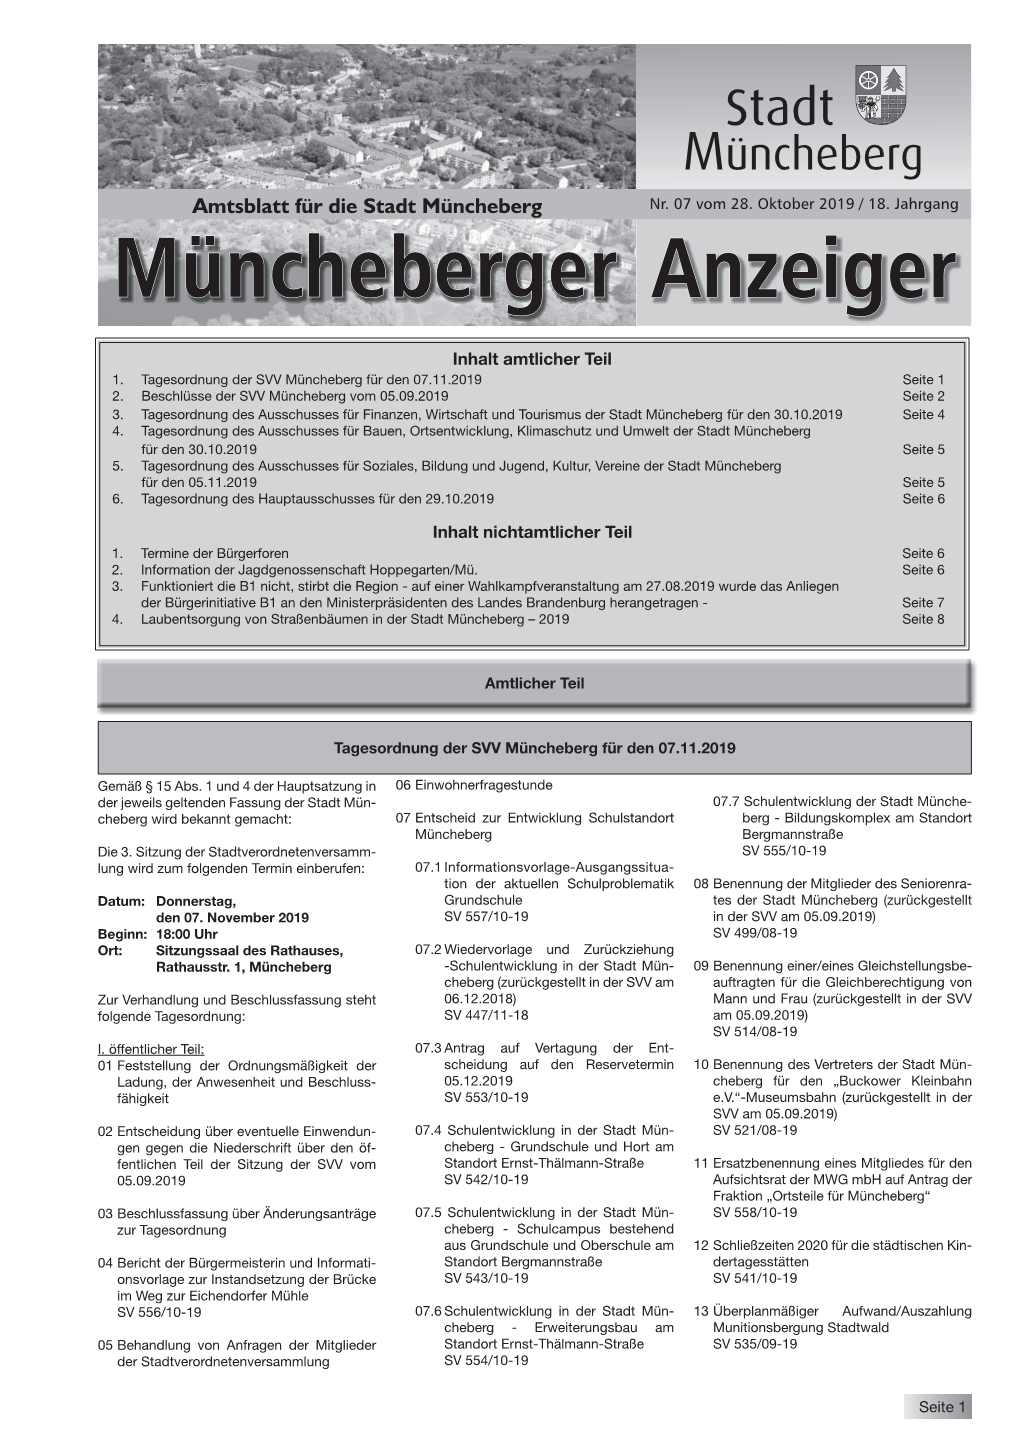 Müncheberger Anzeiger Oktober 2019.Indd